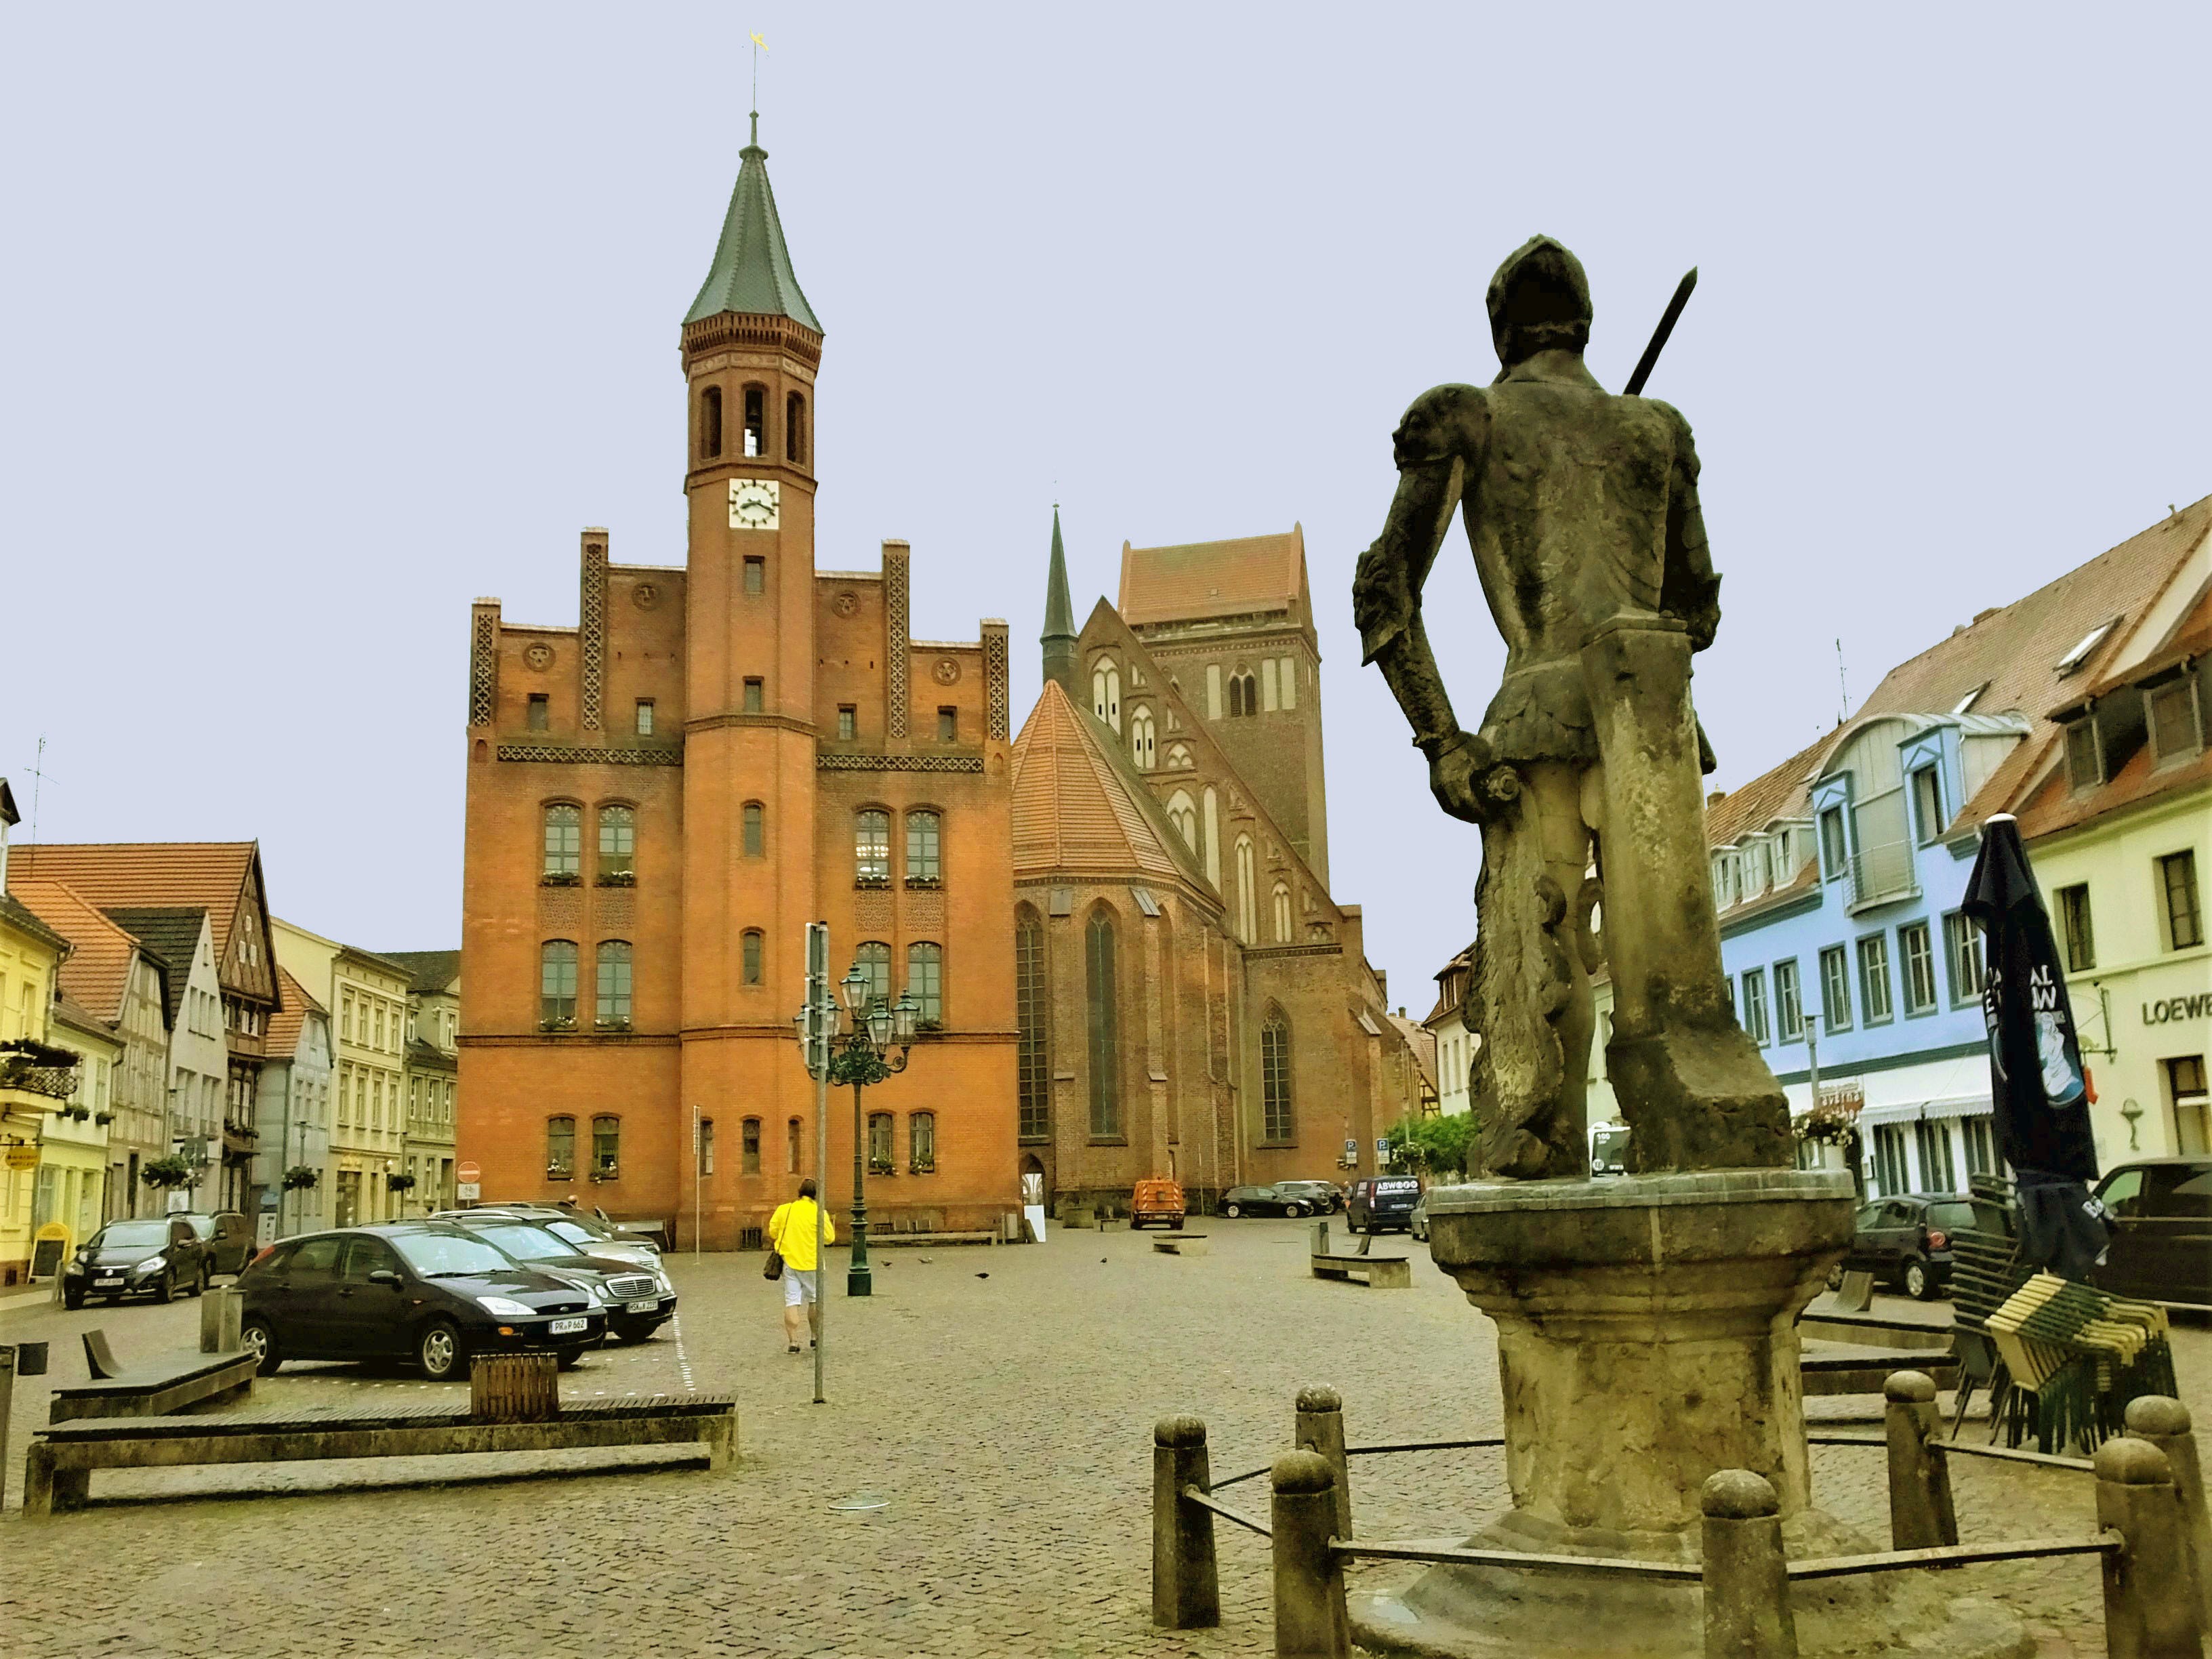 Buchstäblich als "Perle der Prignitz" gilt die Kreisstadt Perleberg. Hier der Große Markt mit der Rolandsfigur von 1546 und dem Rathaus im gotischen und neogotischen Stil. Dahinter die ebenfalls stadtbildprägende Pfarrkirche St. Jacobi.